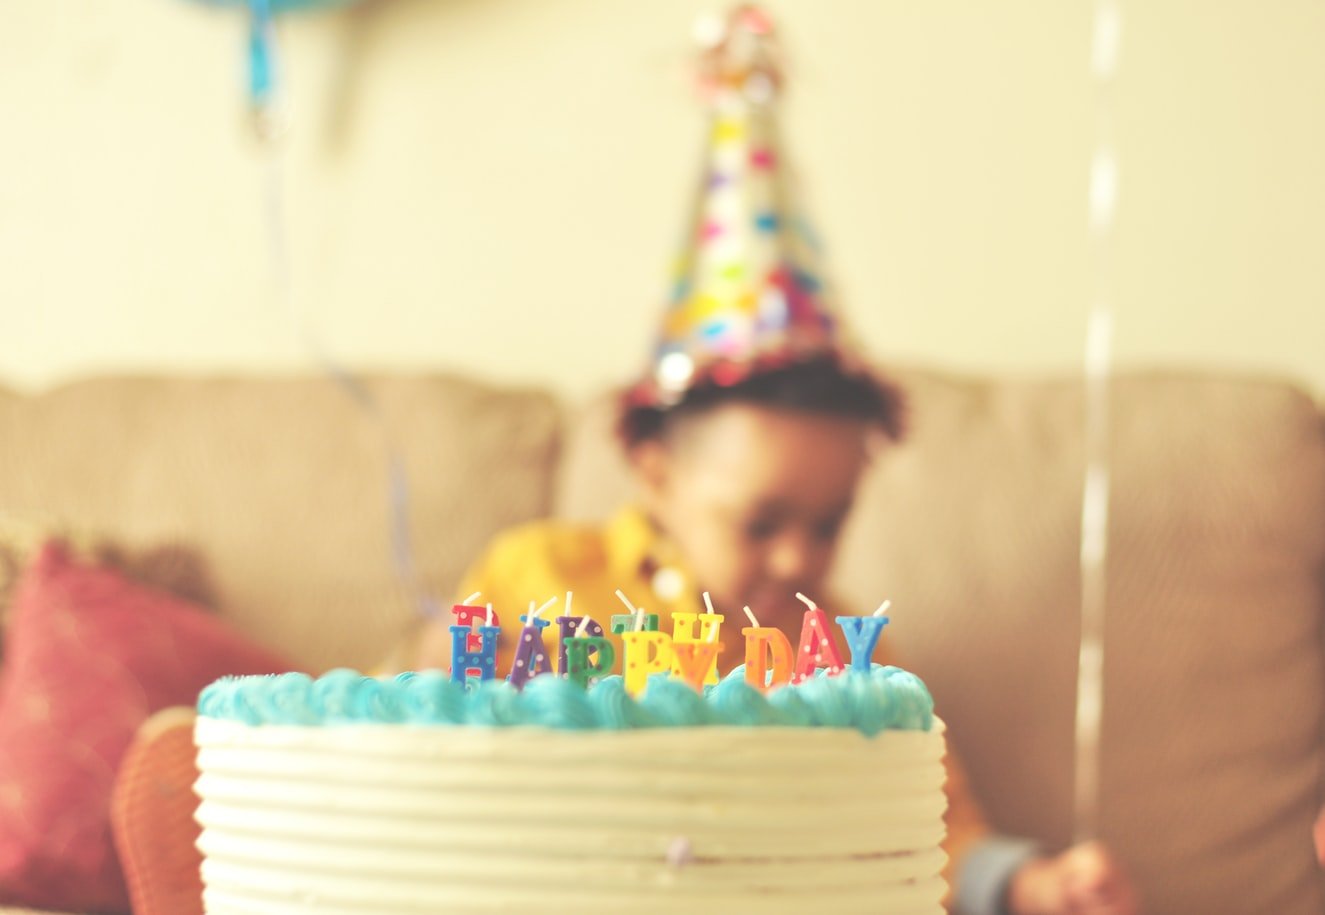 Criança com chapéu de festa segurando um balão atrás de um bolo de aniversário.